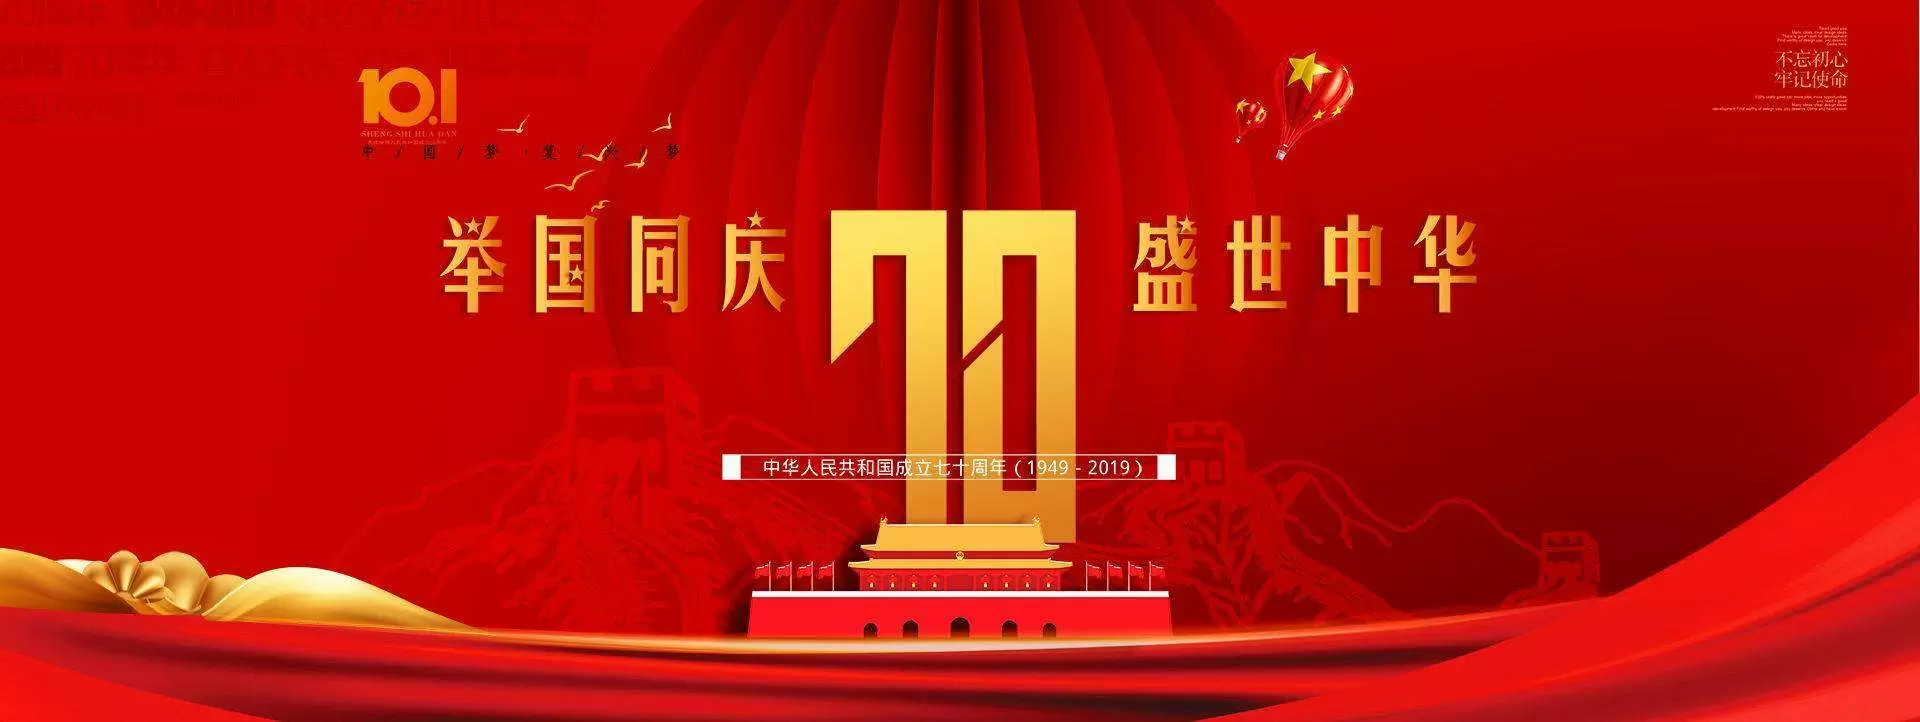 智慧社区-壮丽70年,奋斗新时代，热烈庆祝新中国成立70周年!